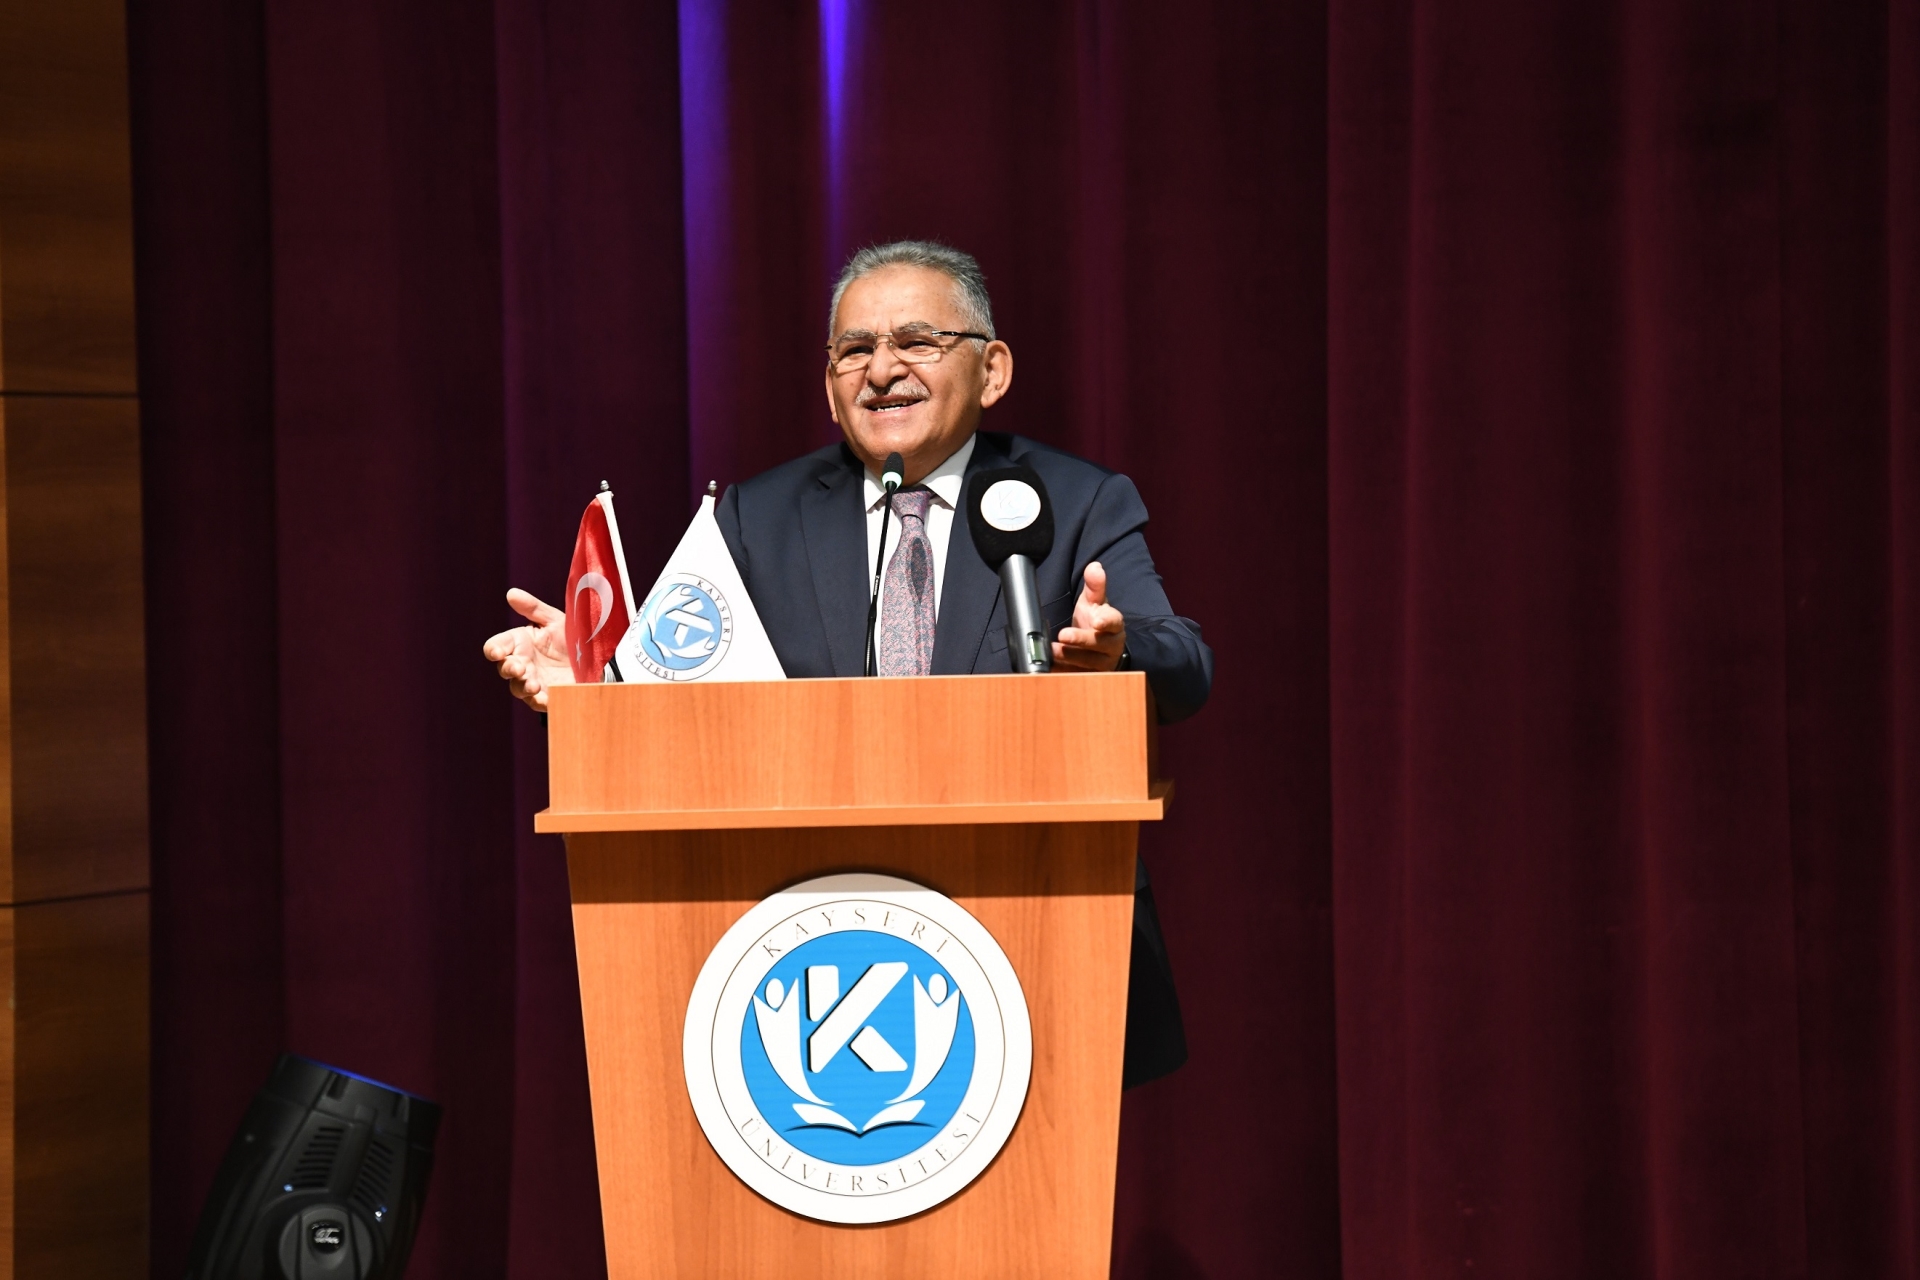 Başkan Büyükkılıç, Kayseri Üniversitesi’nin 4. Yılını Kutladı, Gençlere Seslendi